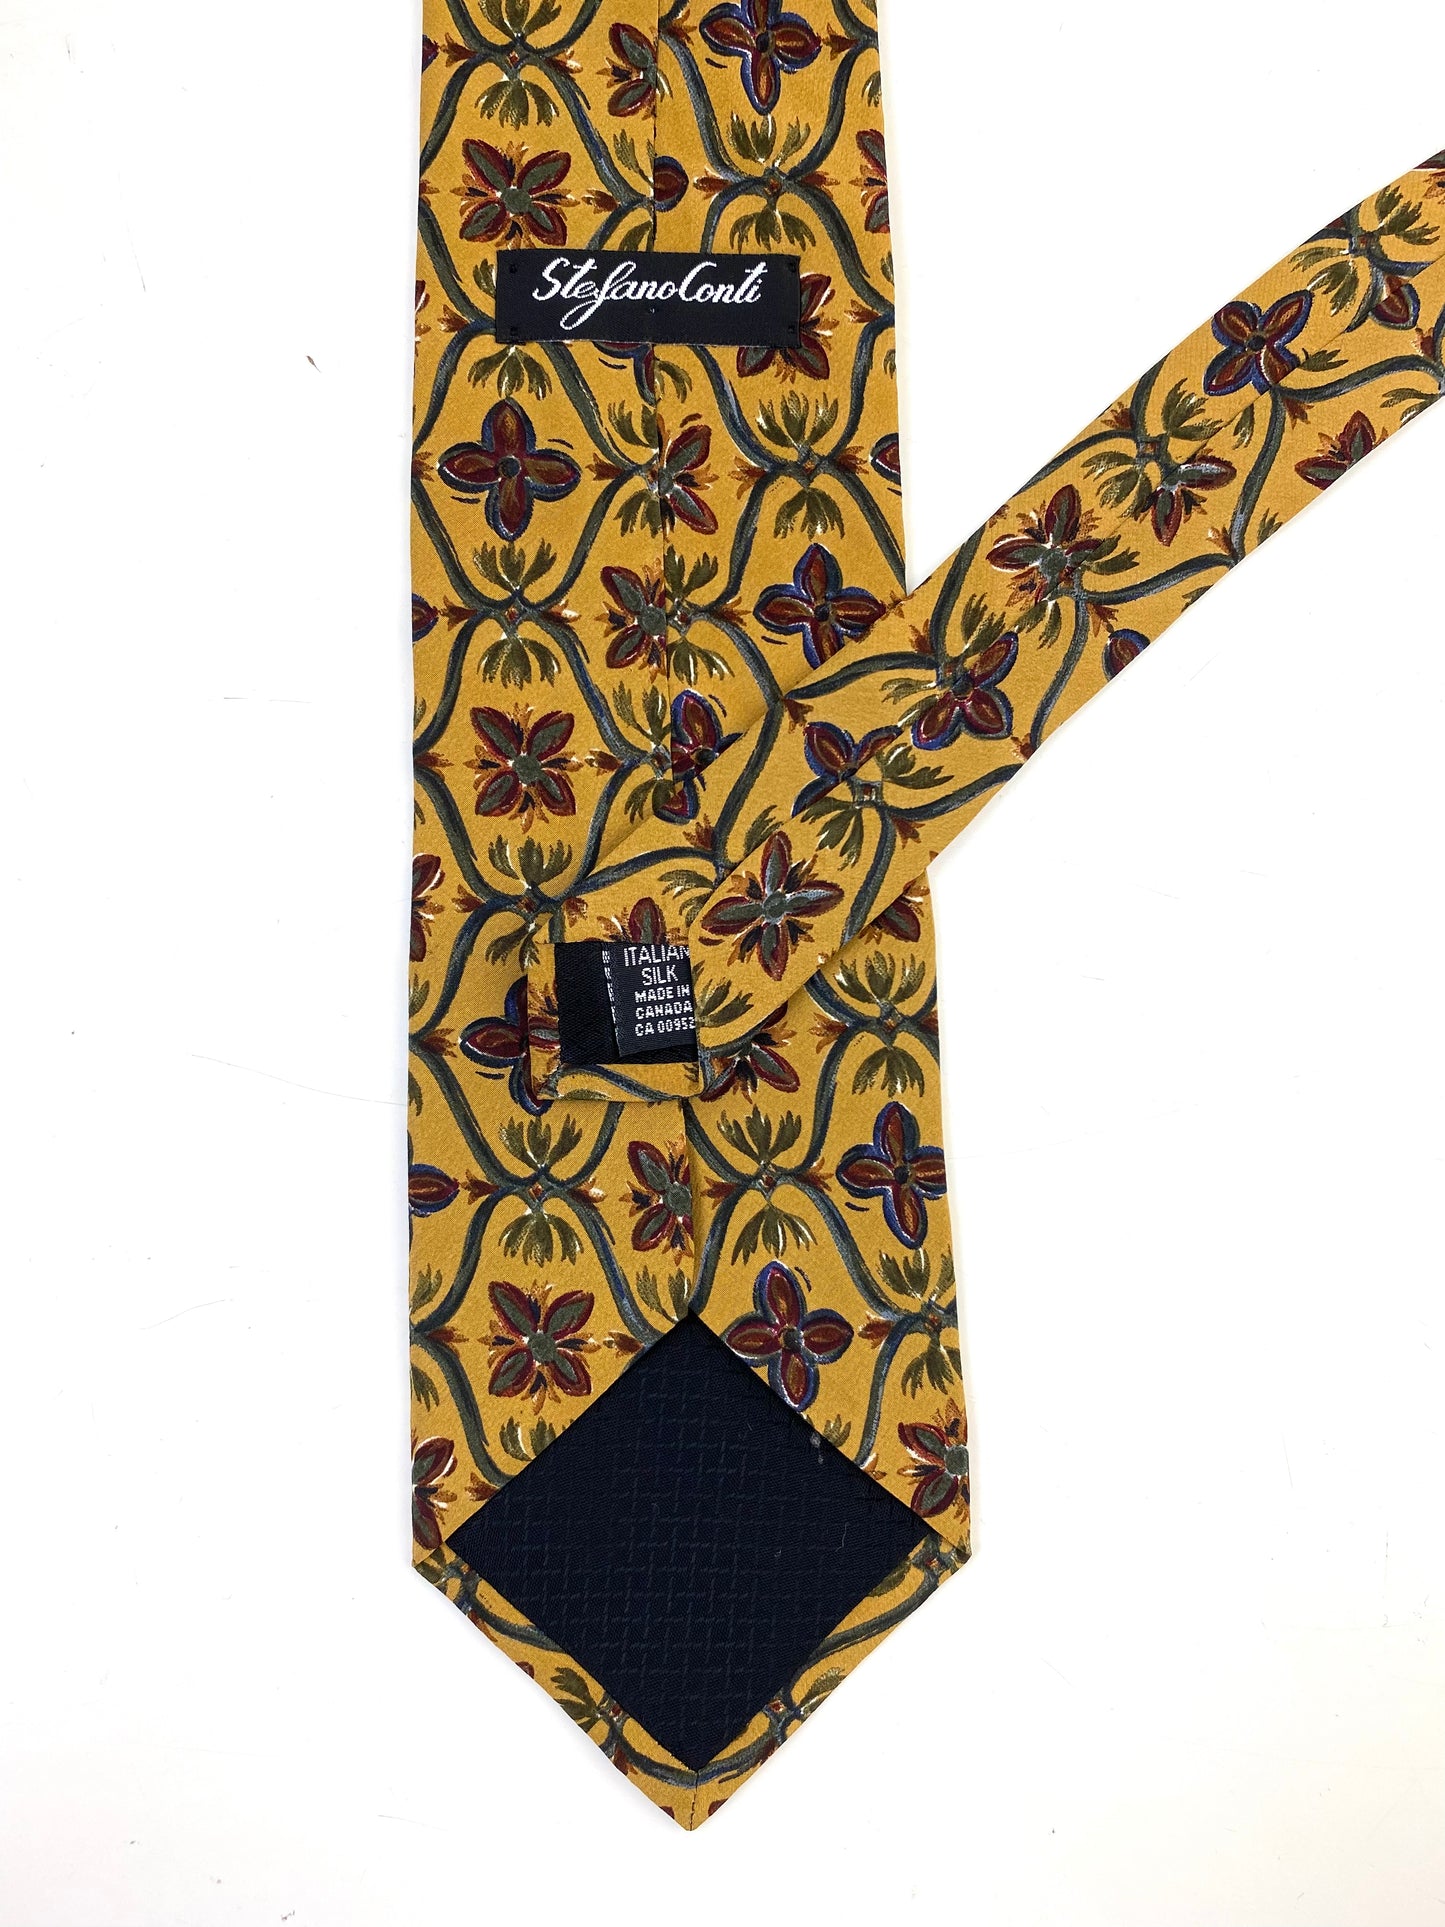 90s Deadstock Silk Necktie, Men's Vintage Gold Floral Pattern Tie, NOS